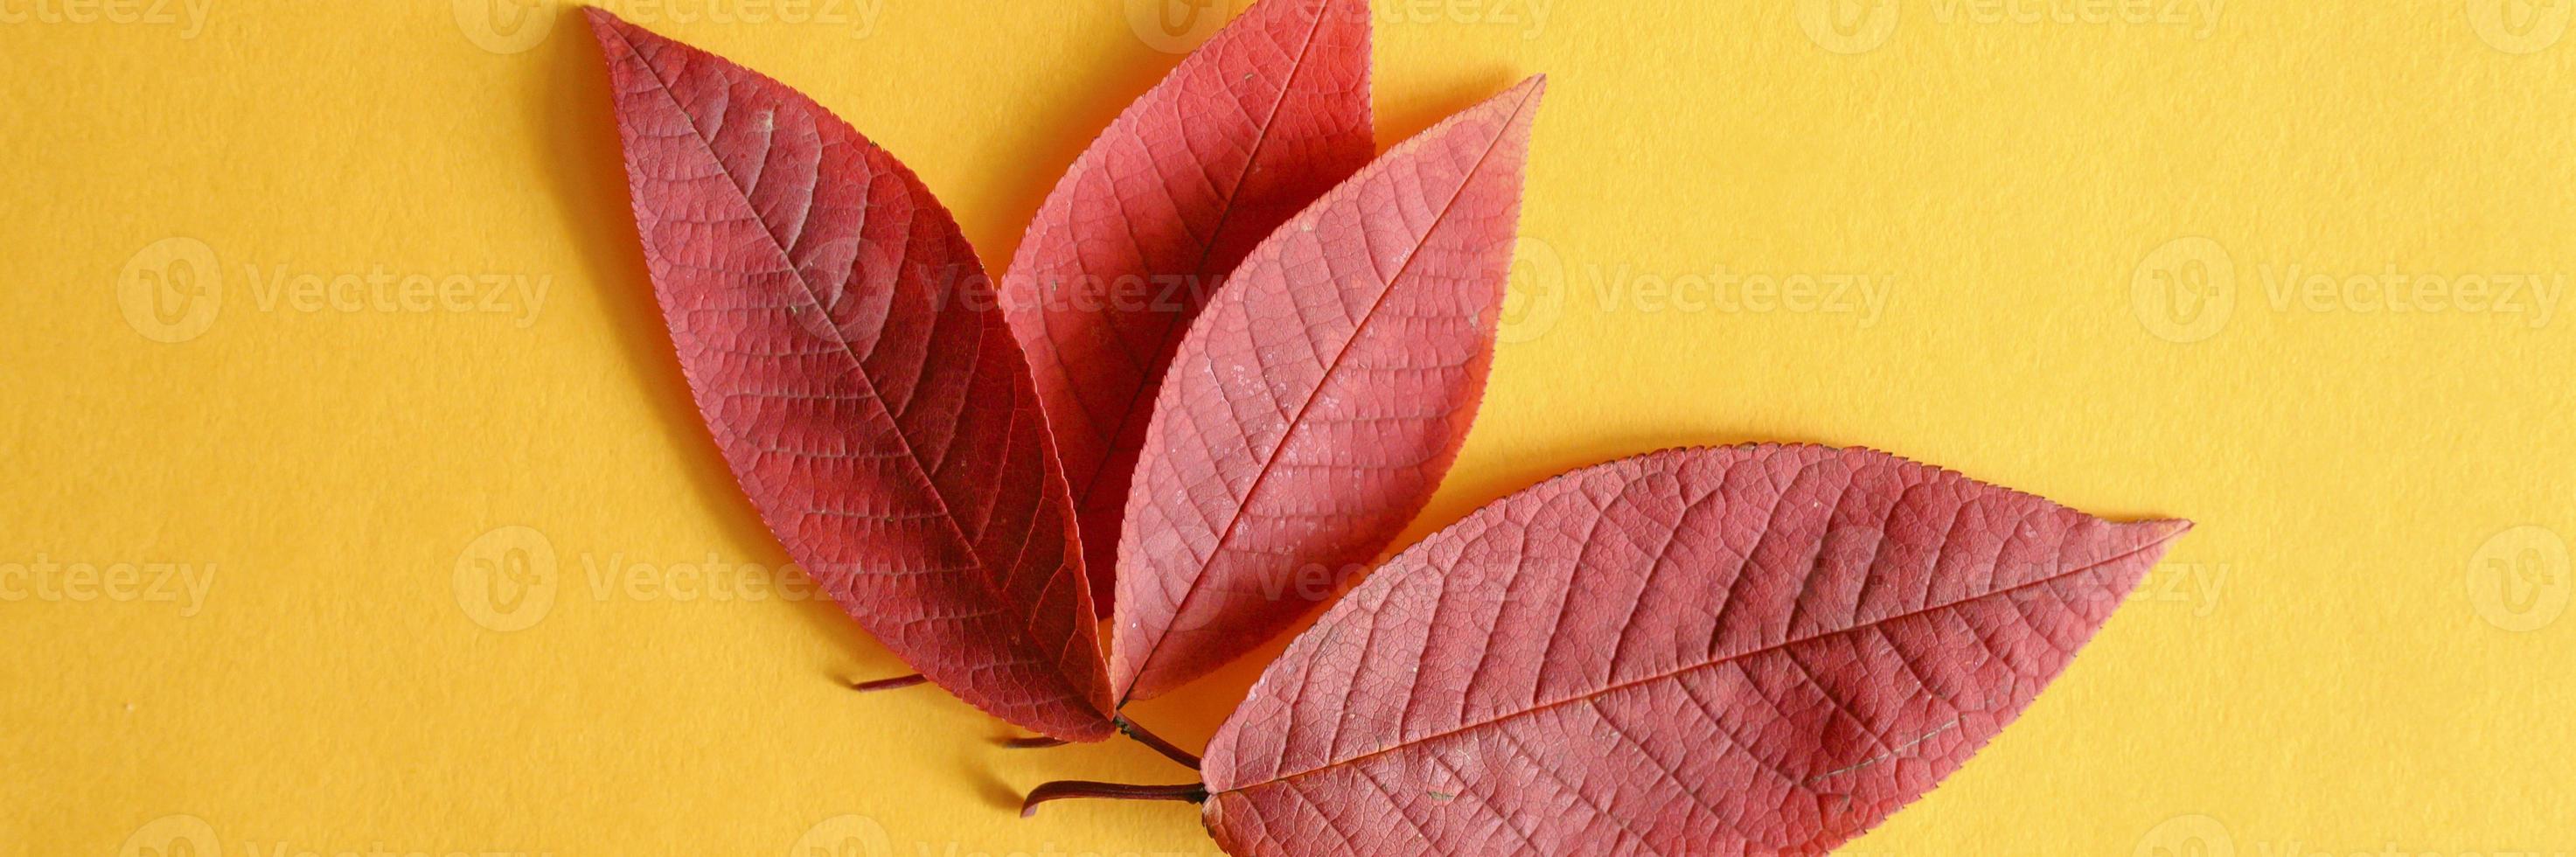 várias folhas vermelhas de cereja de outono caídas em um plano de fundo de papel amarelo foto